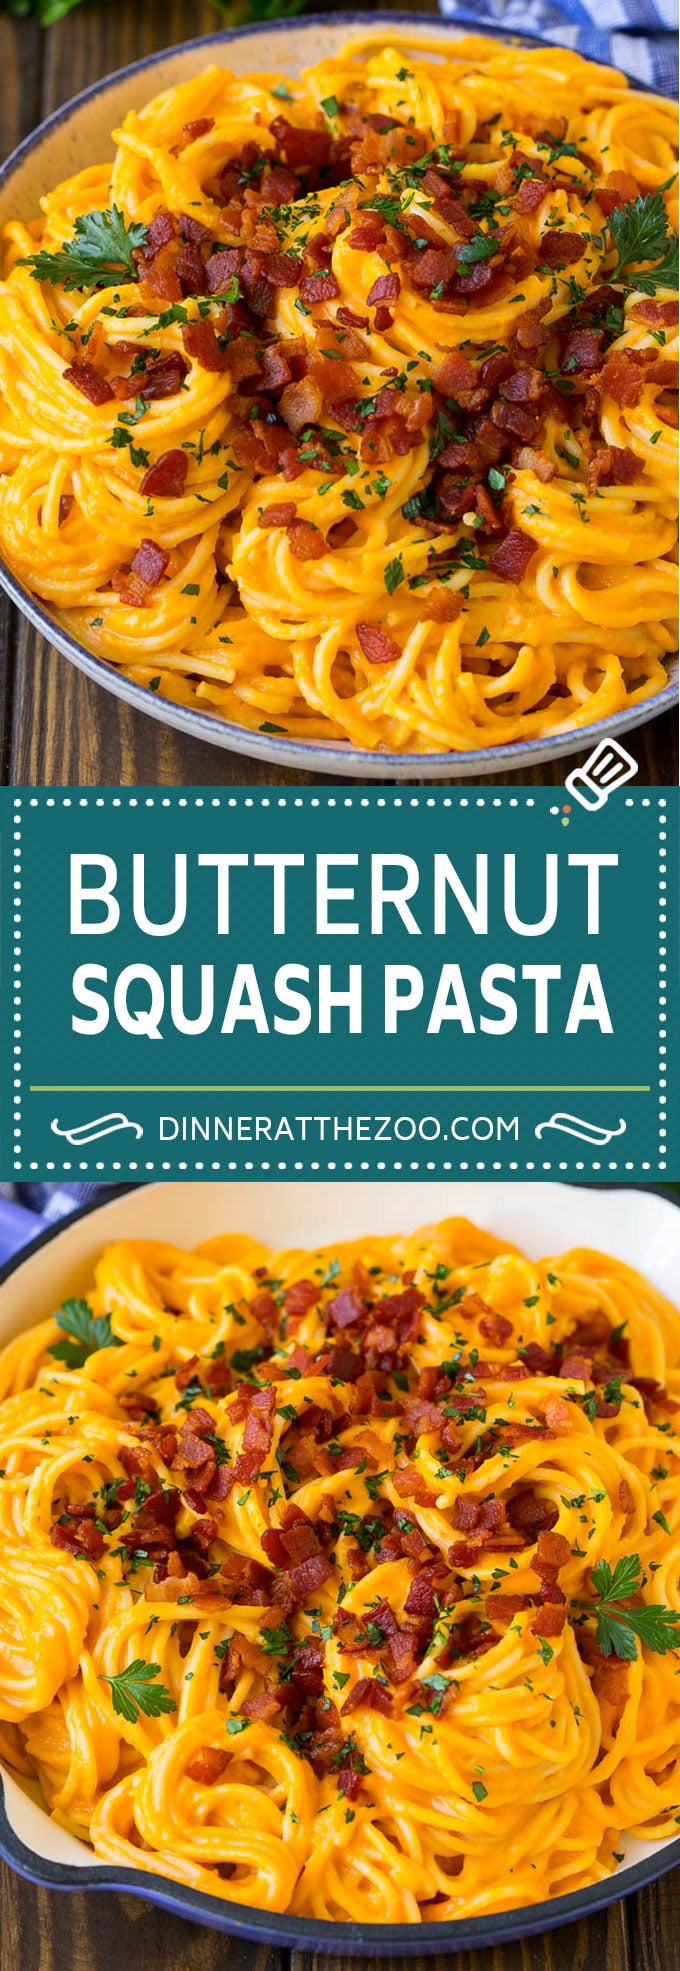 Receta de pasta de calabaza butternut #pasta #squash #bacon #fall #dinner #dinneratthezoo